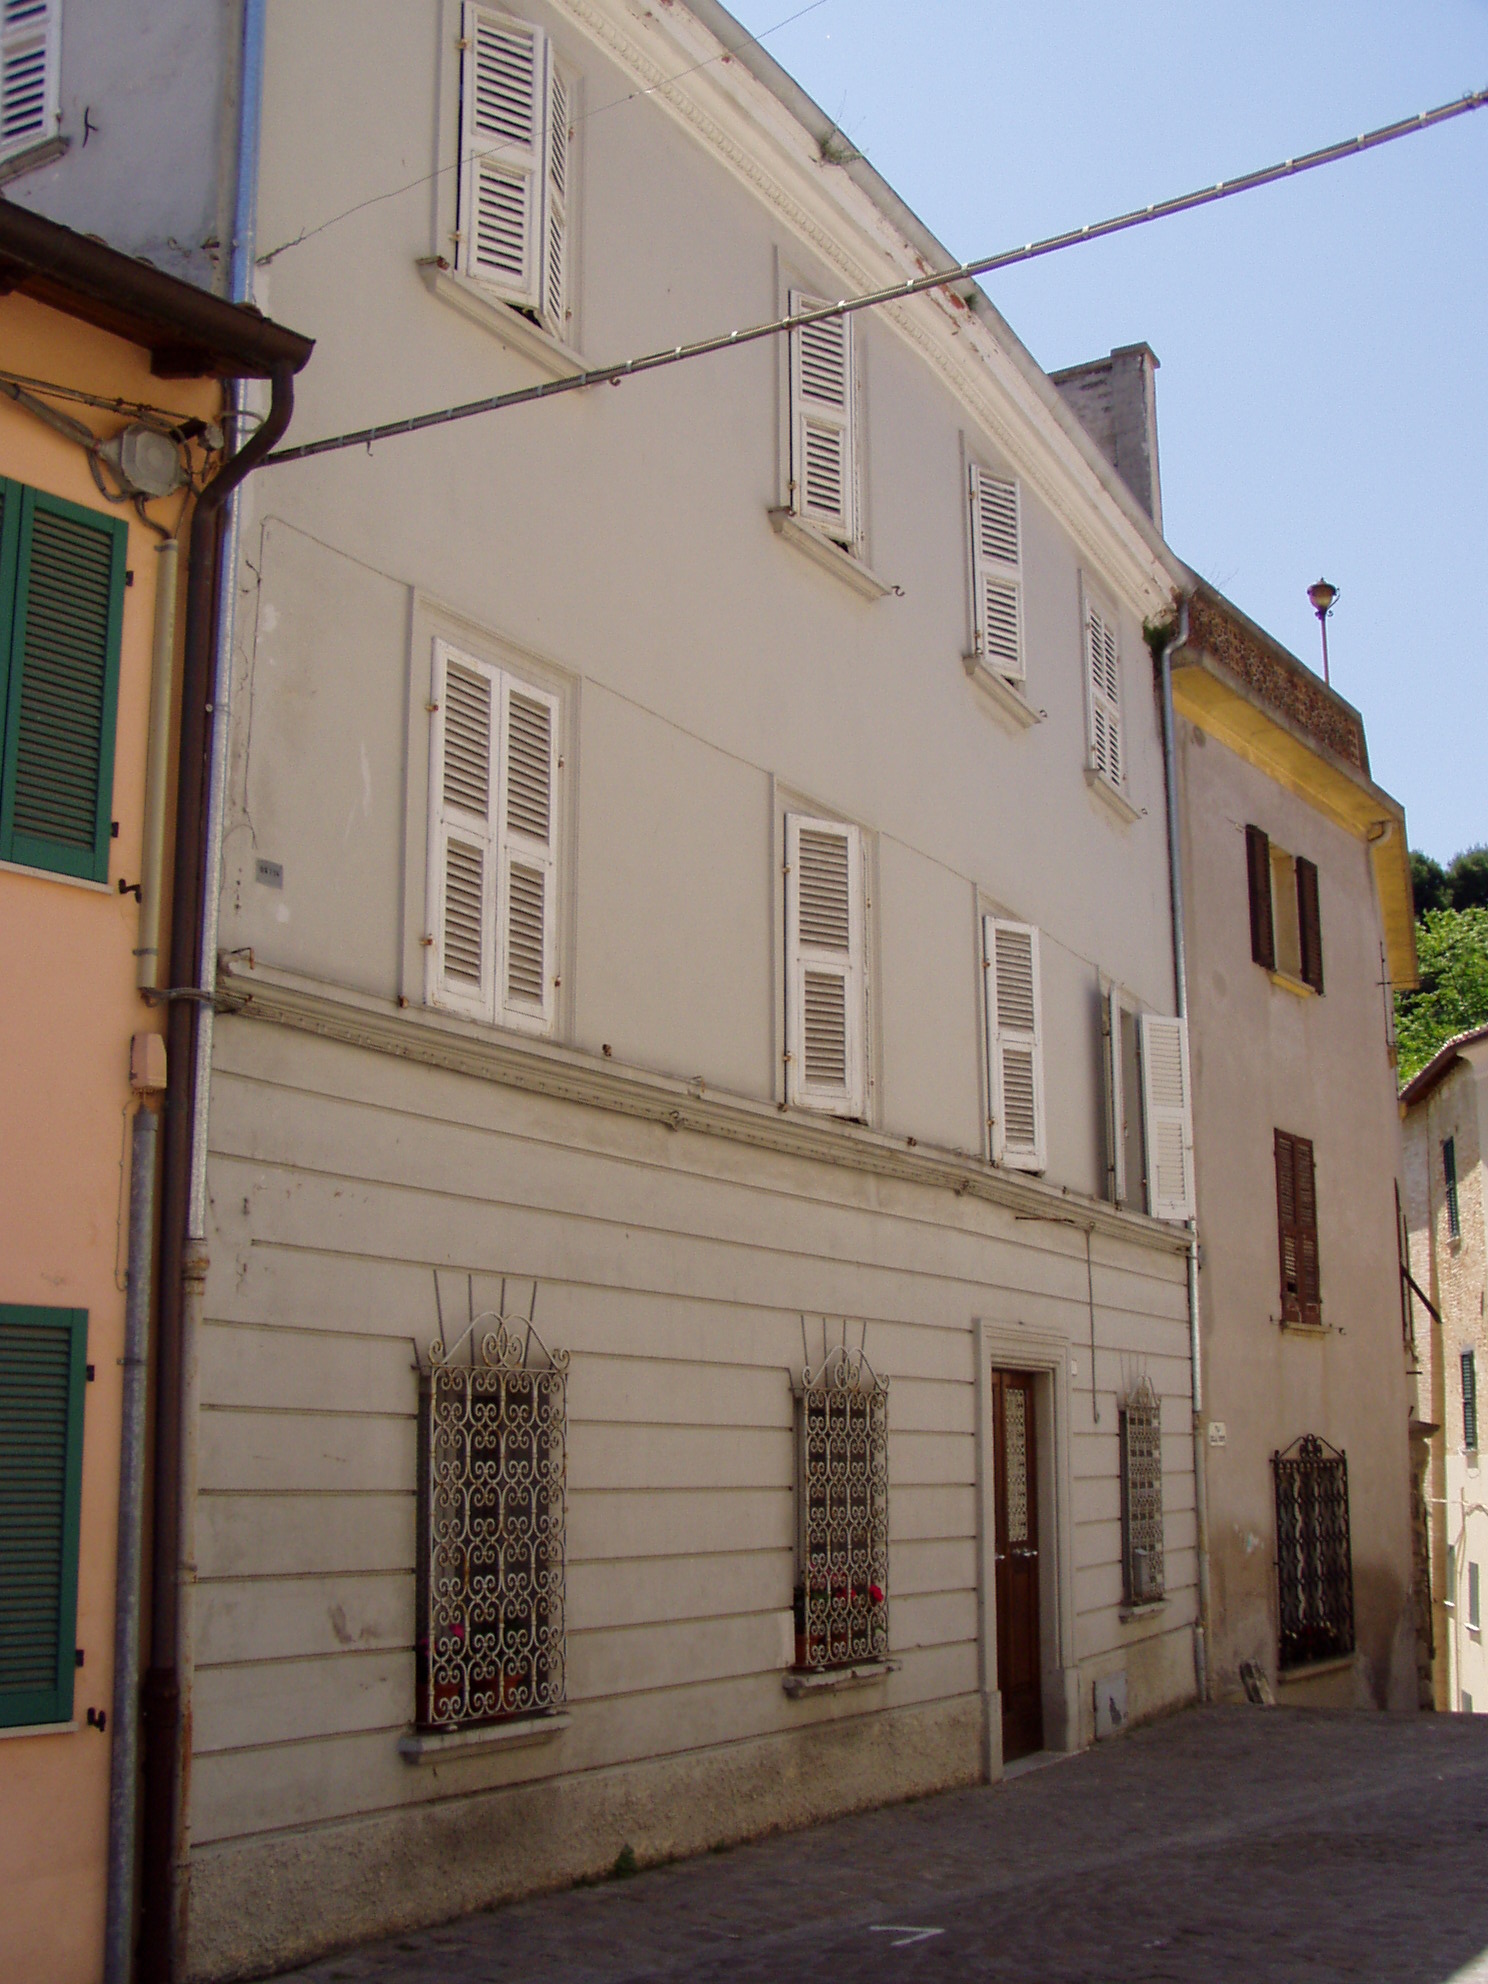 Palazzo nobiliare (palazzo, nobiliare) - Cartoceto (PU) 